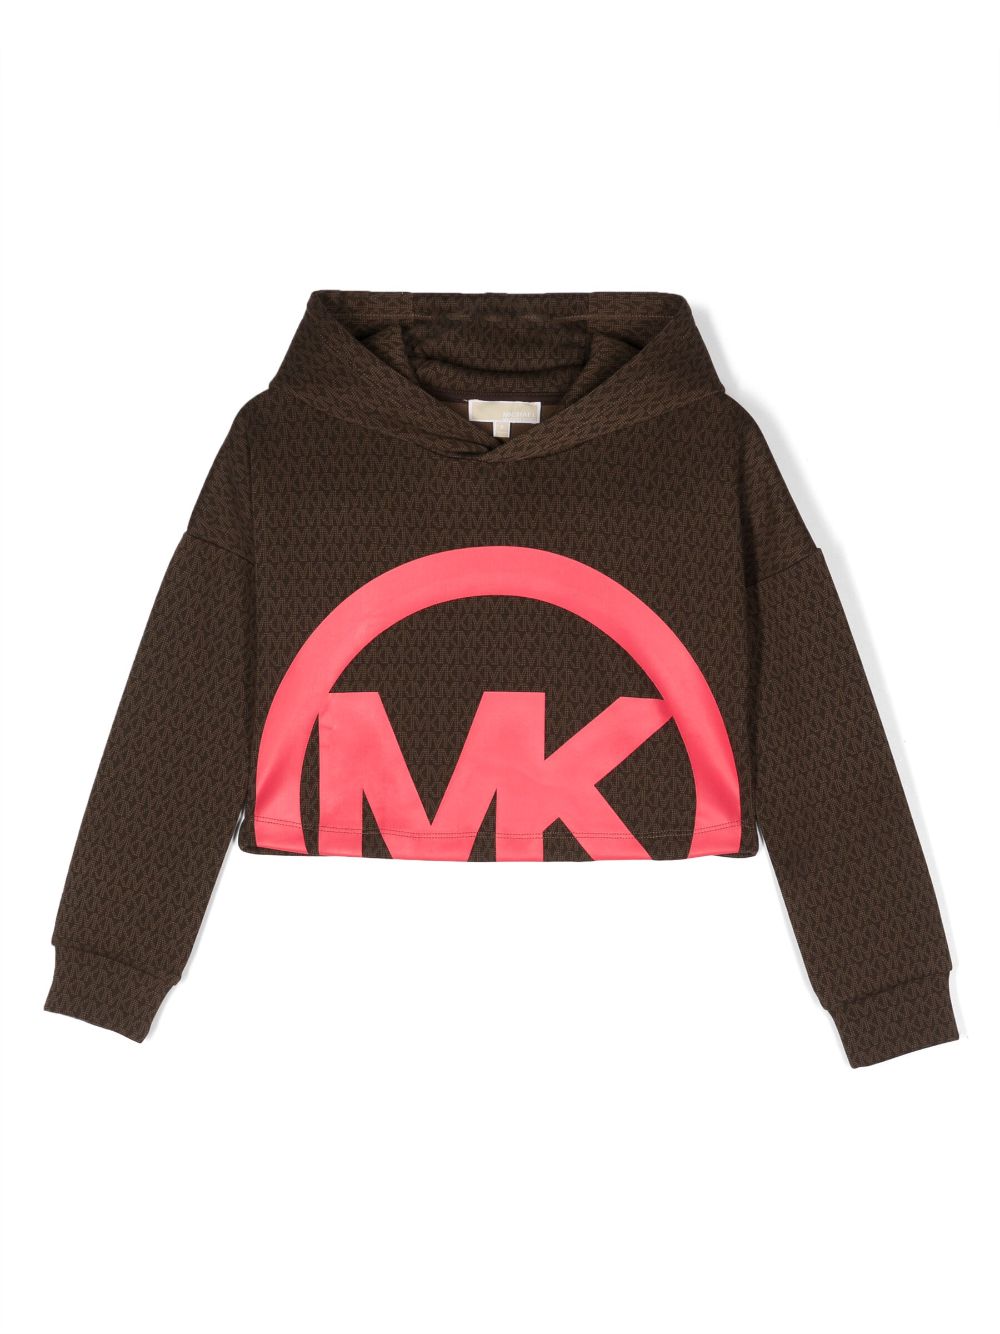 Michael Kors Kids logo-print long-sleeved hoodie - Brown